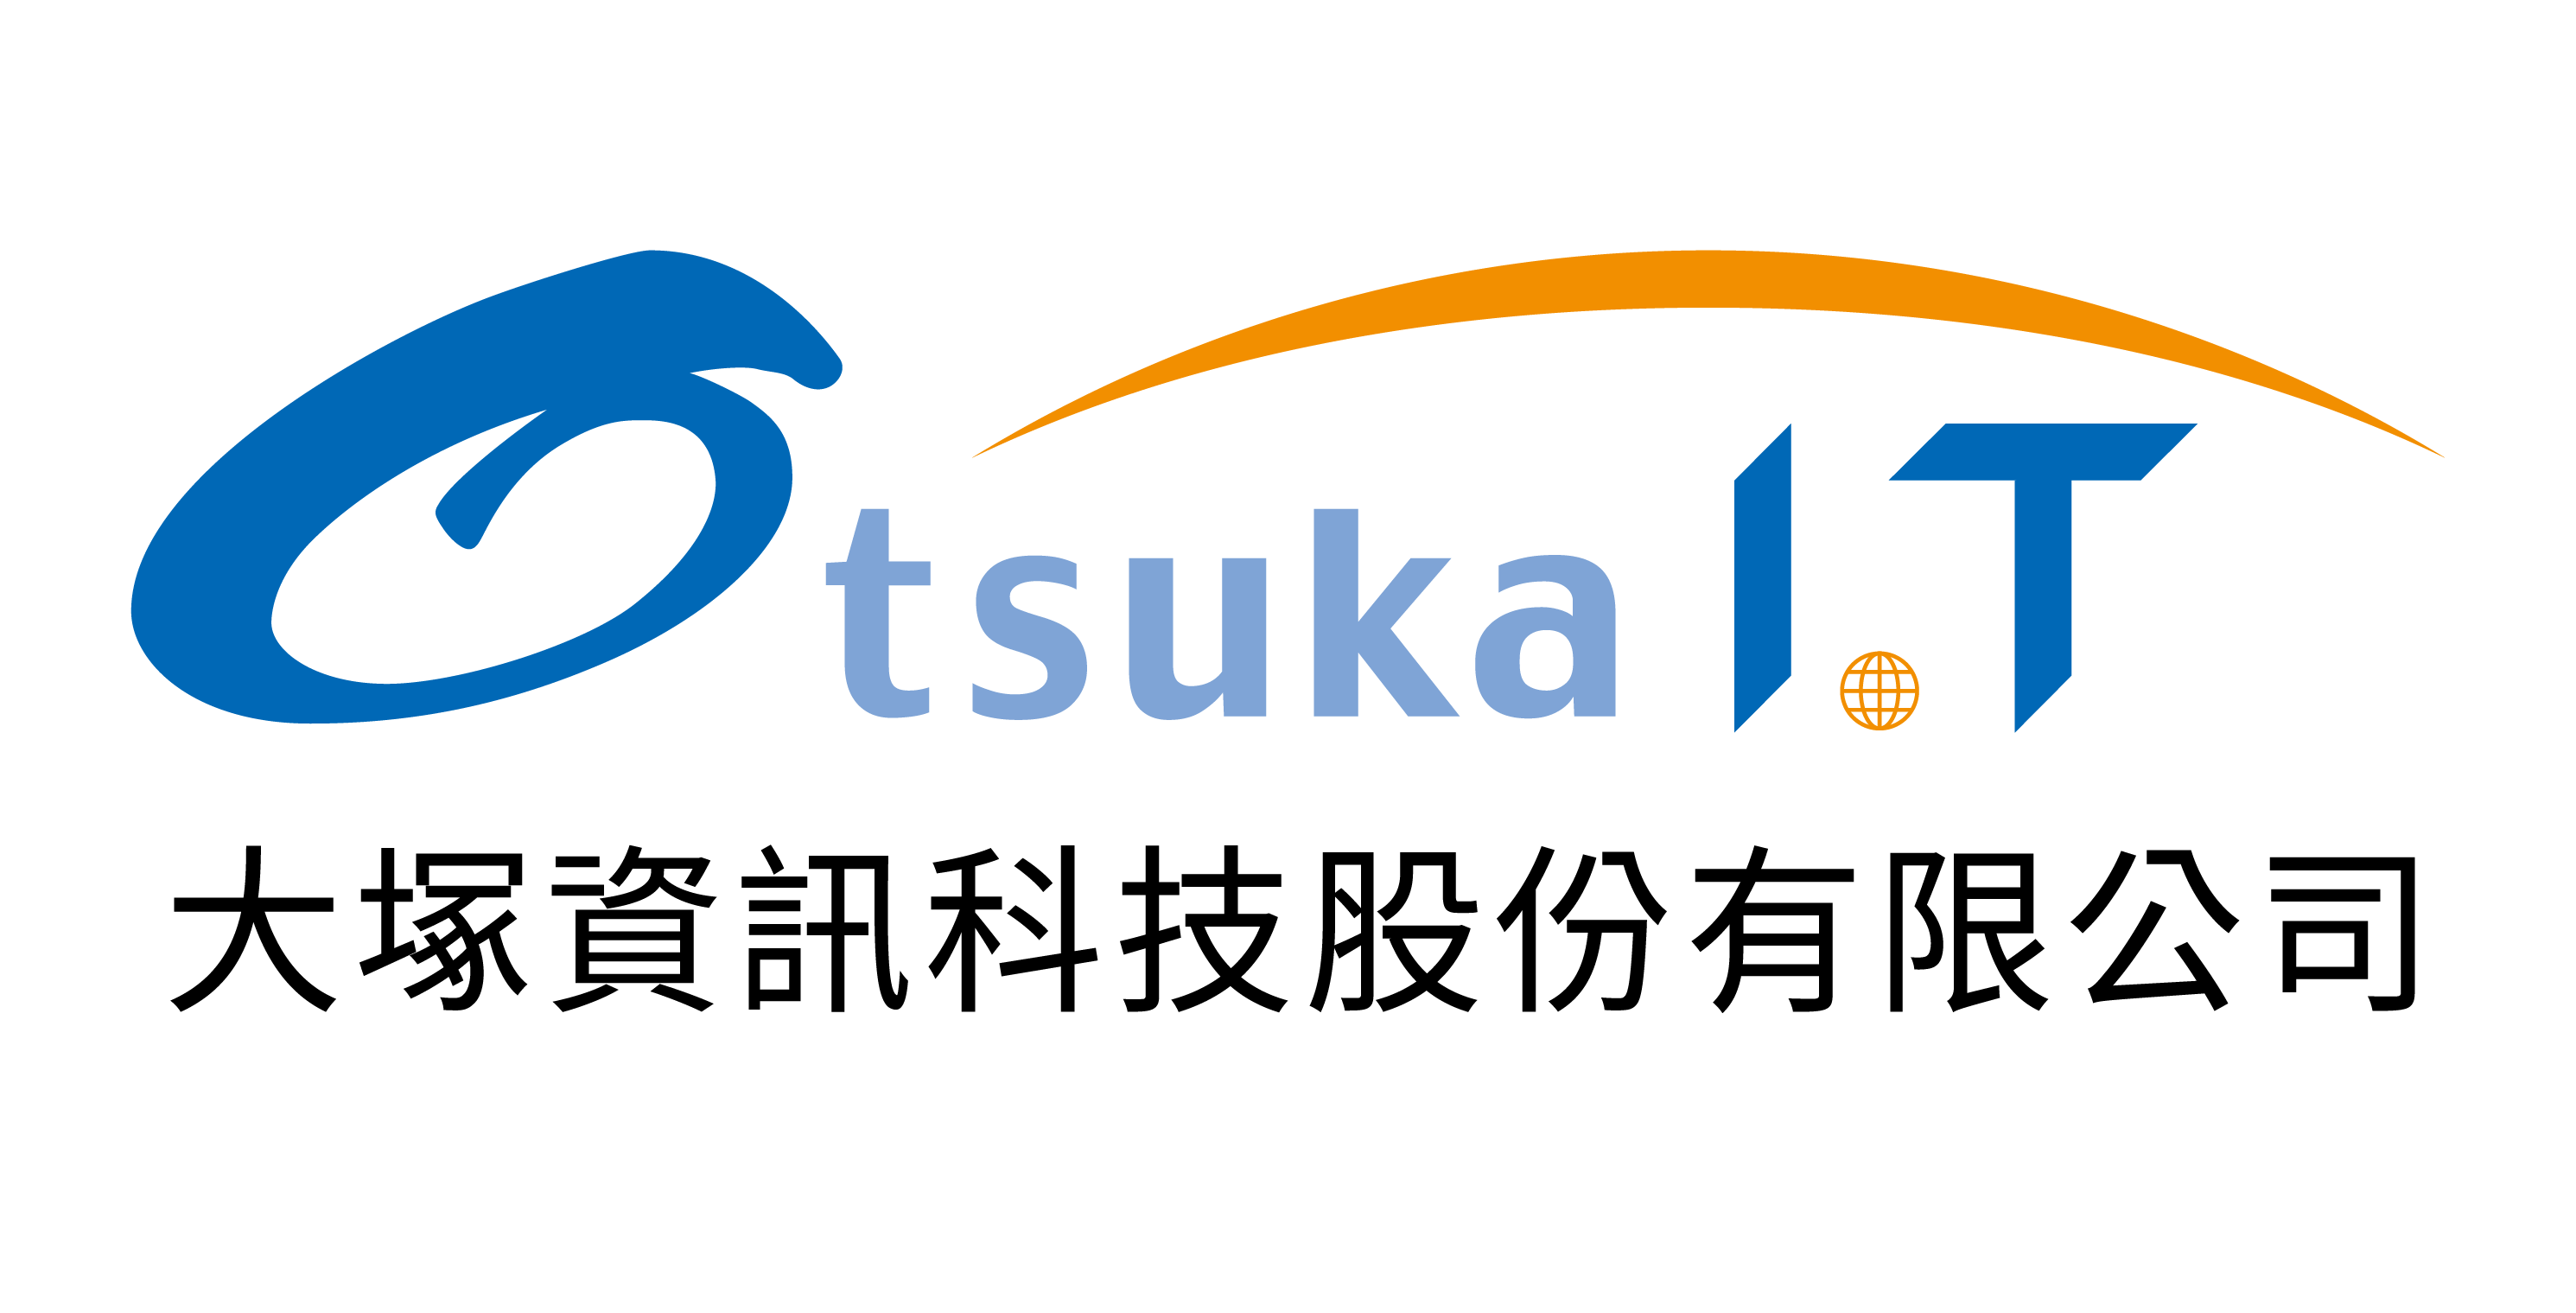 Otsuka Information Technology Corp.